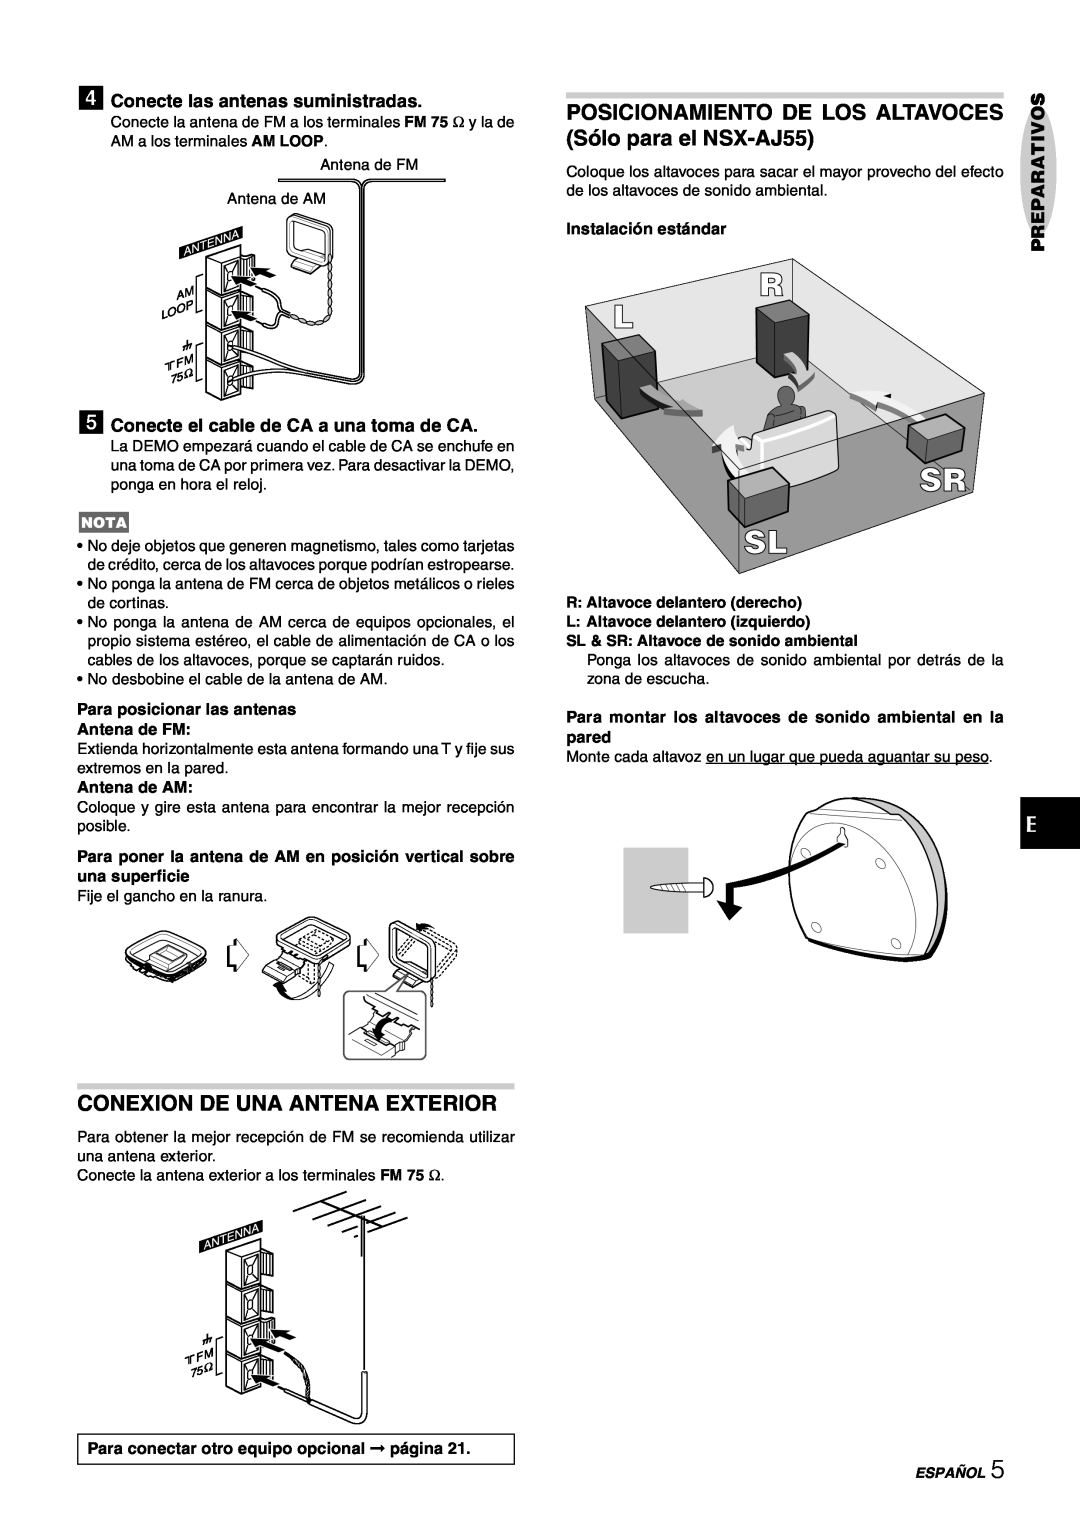 Aiwa CX-NAJ54 manual Conexion De Una Antena Exterior, Posicionamiento De Los Altavoces, Sólo para el NSX-AJ55, Antena de AM 